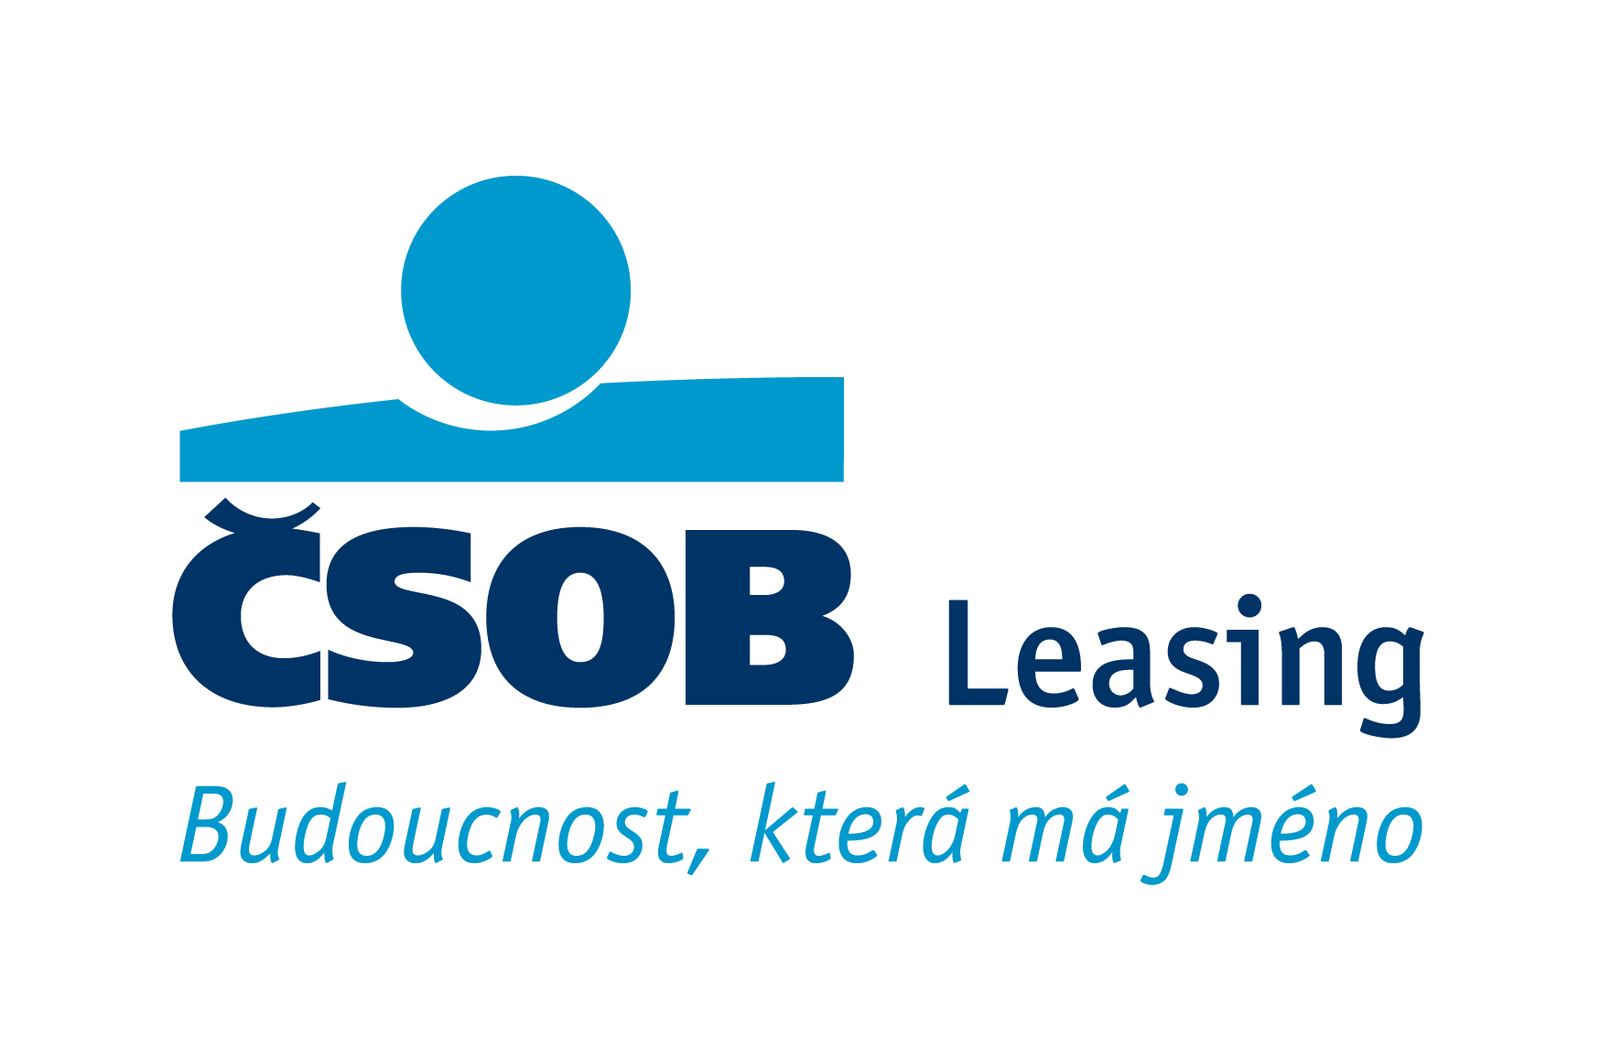 CSOB_Leasing_logo_claim_col_RGB.jpg